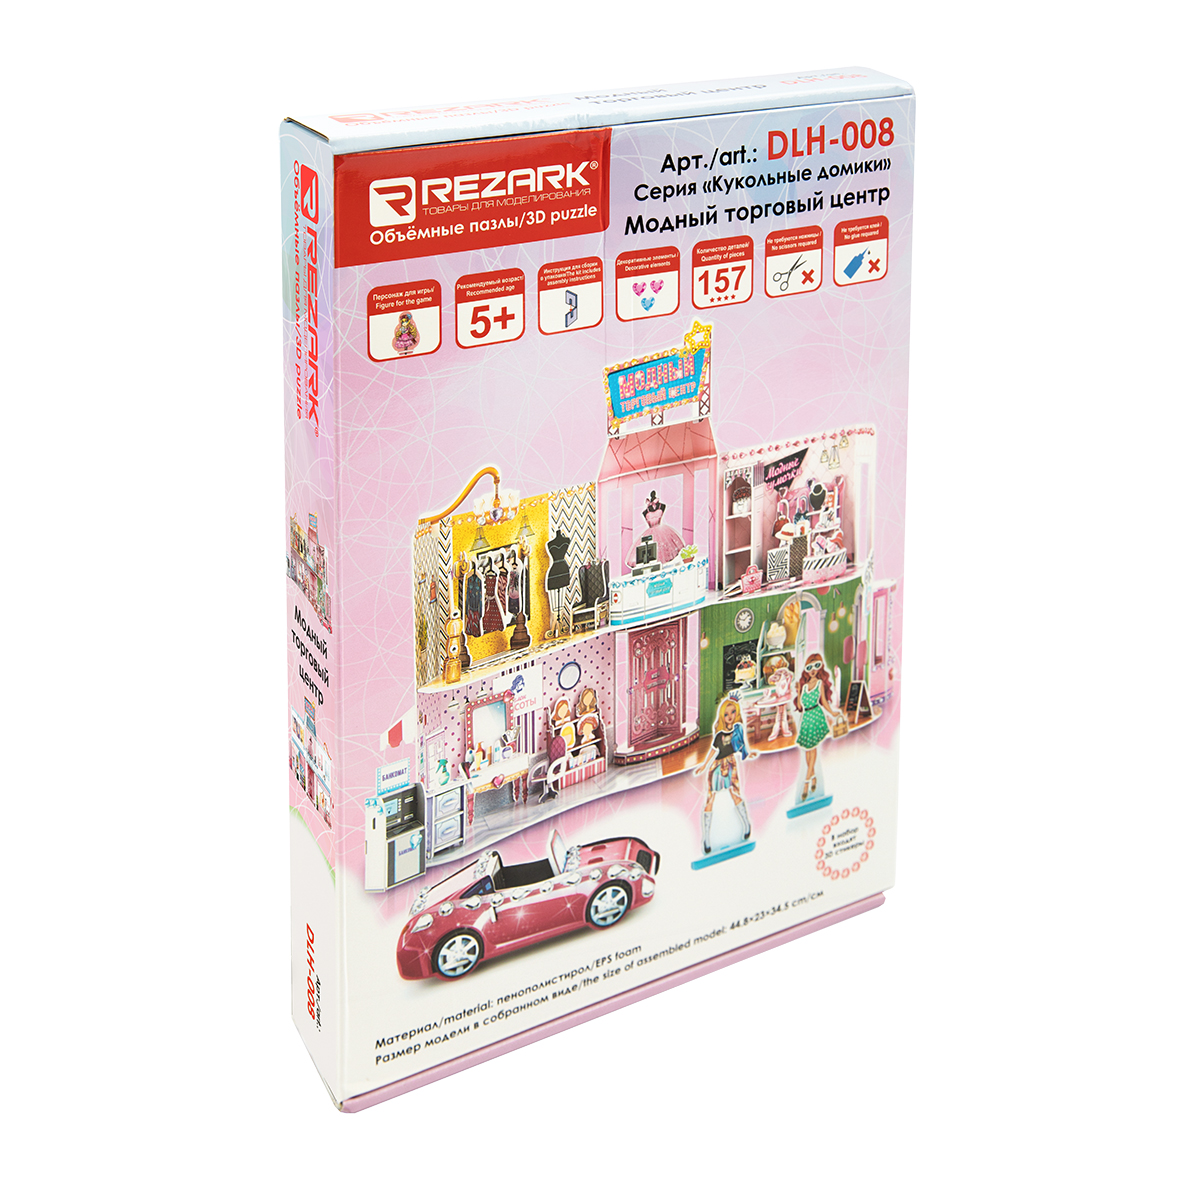 фото Сборная 3d-модель: кукольные домики – модный торговый центр rezark